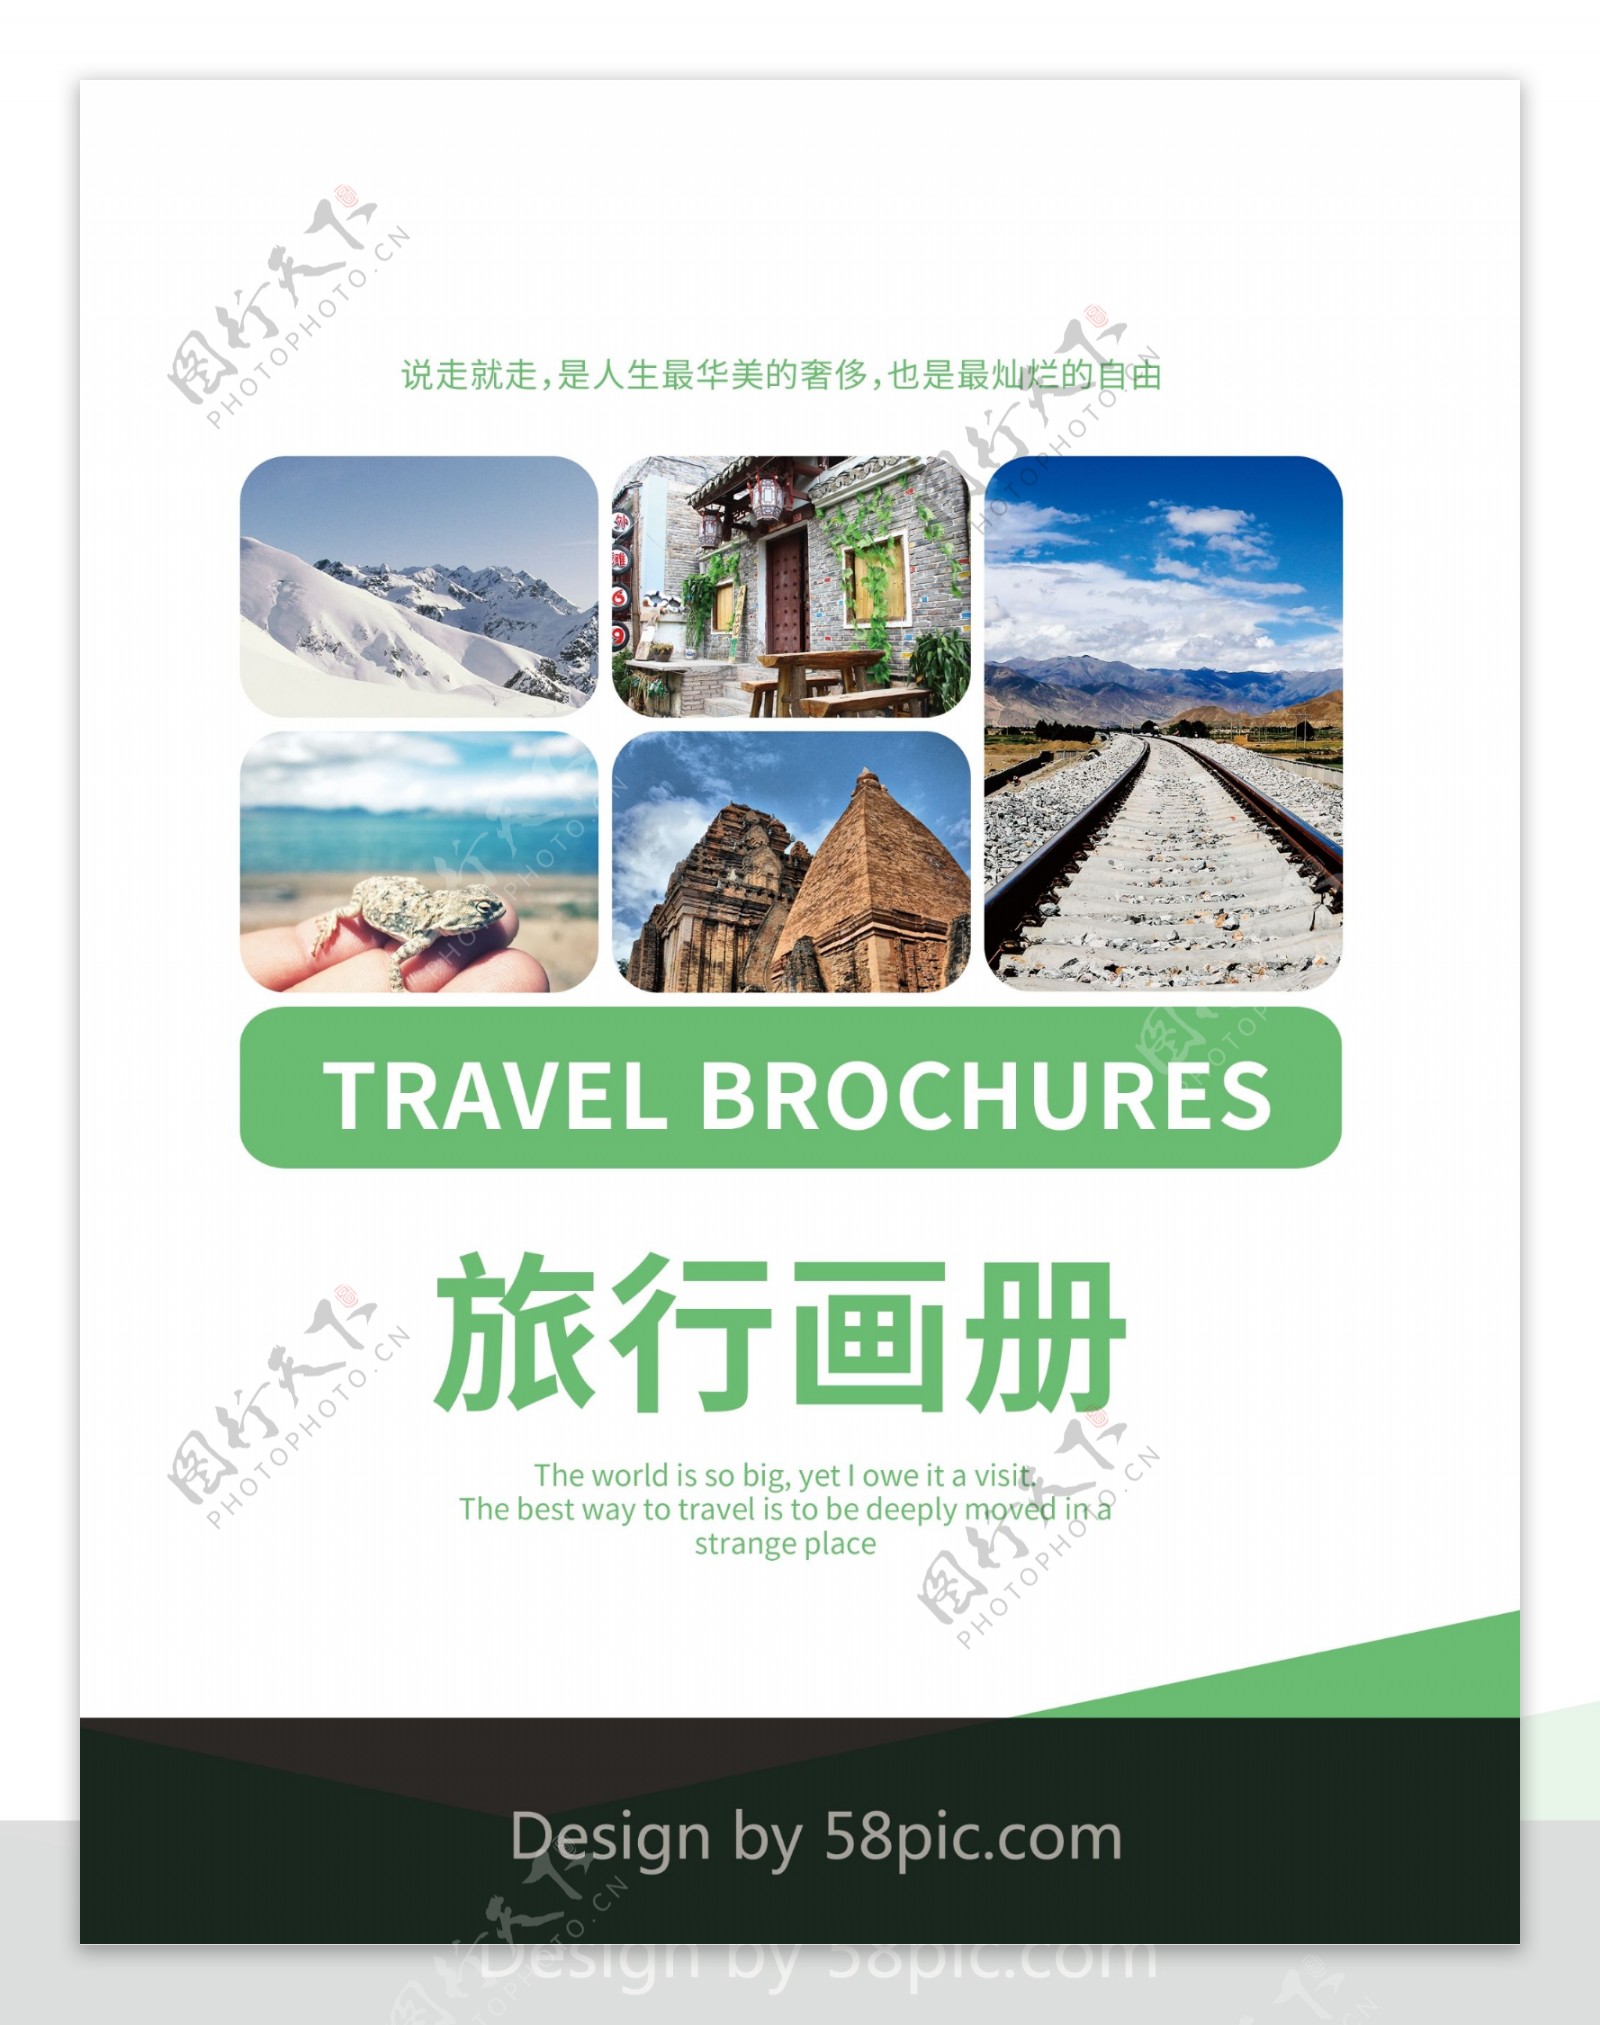 绿色清新旅游纪念画册封面